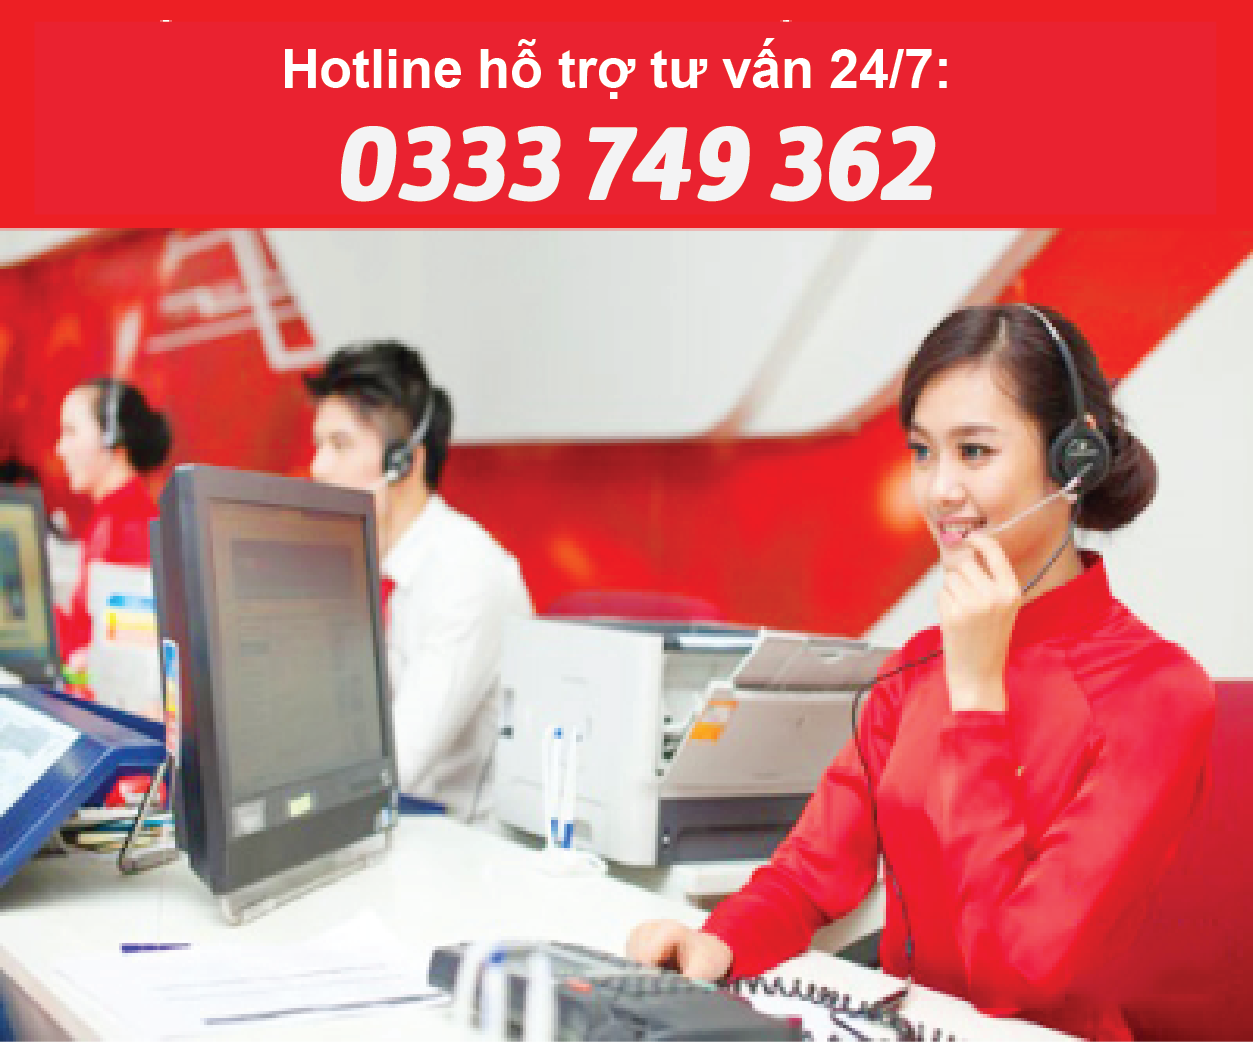 hotline tư vấn